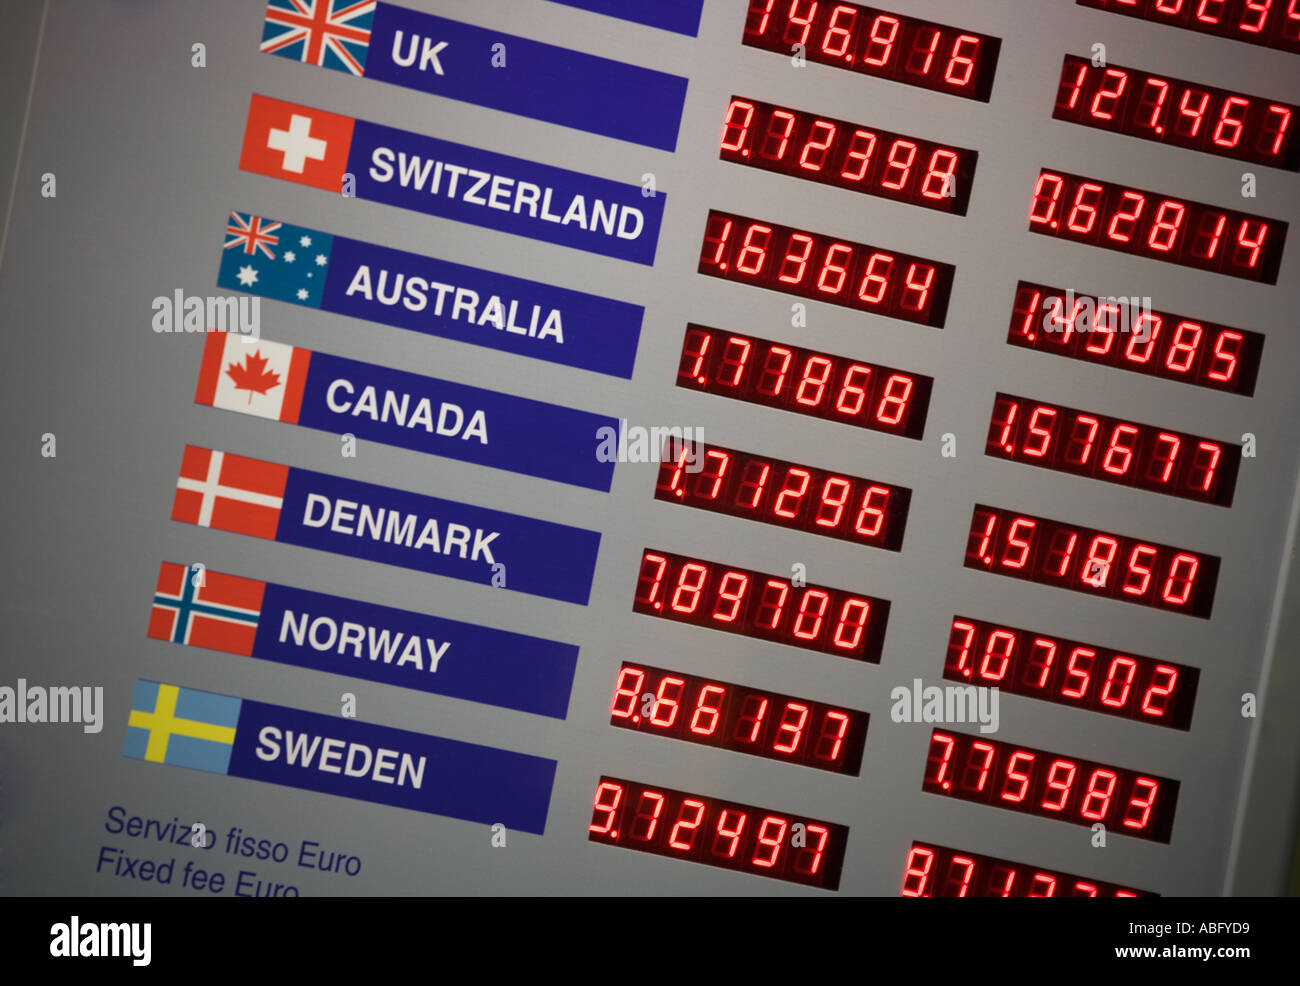 Electronic display of exchange rates Stock Photo